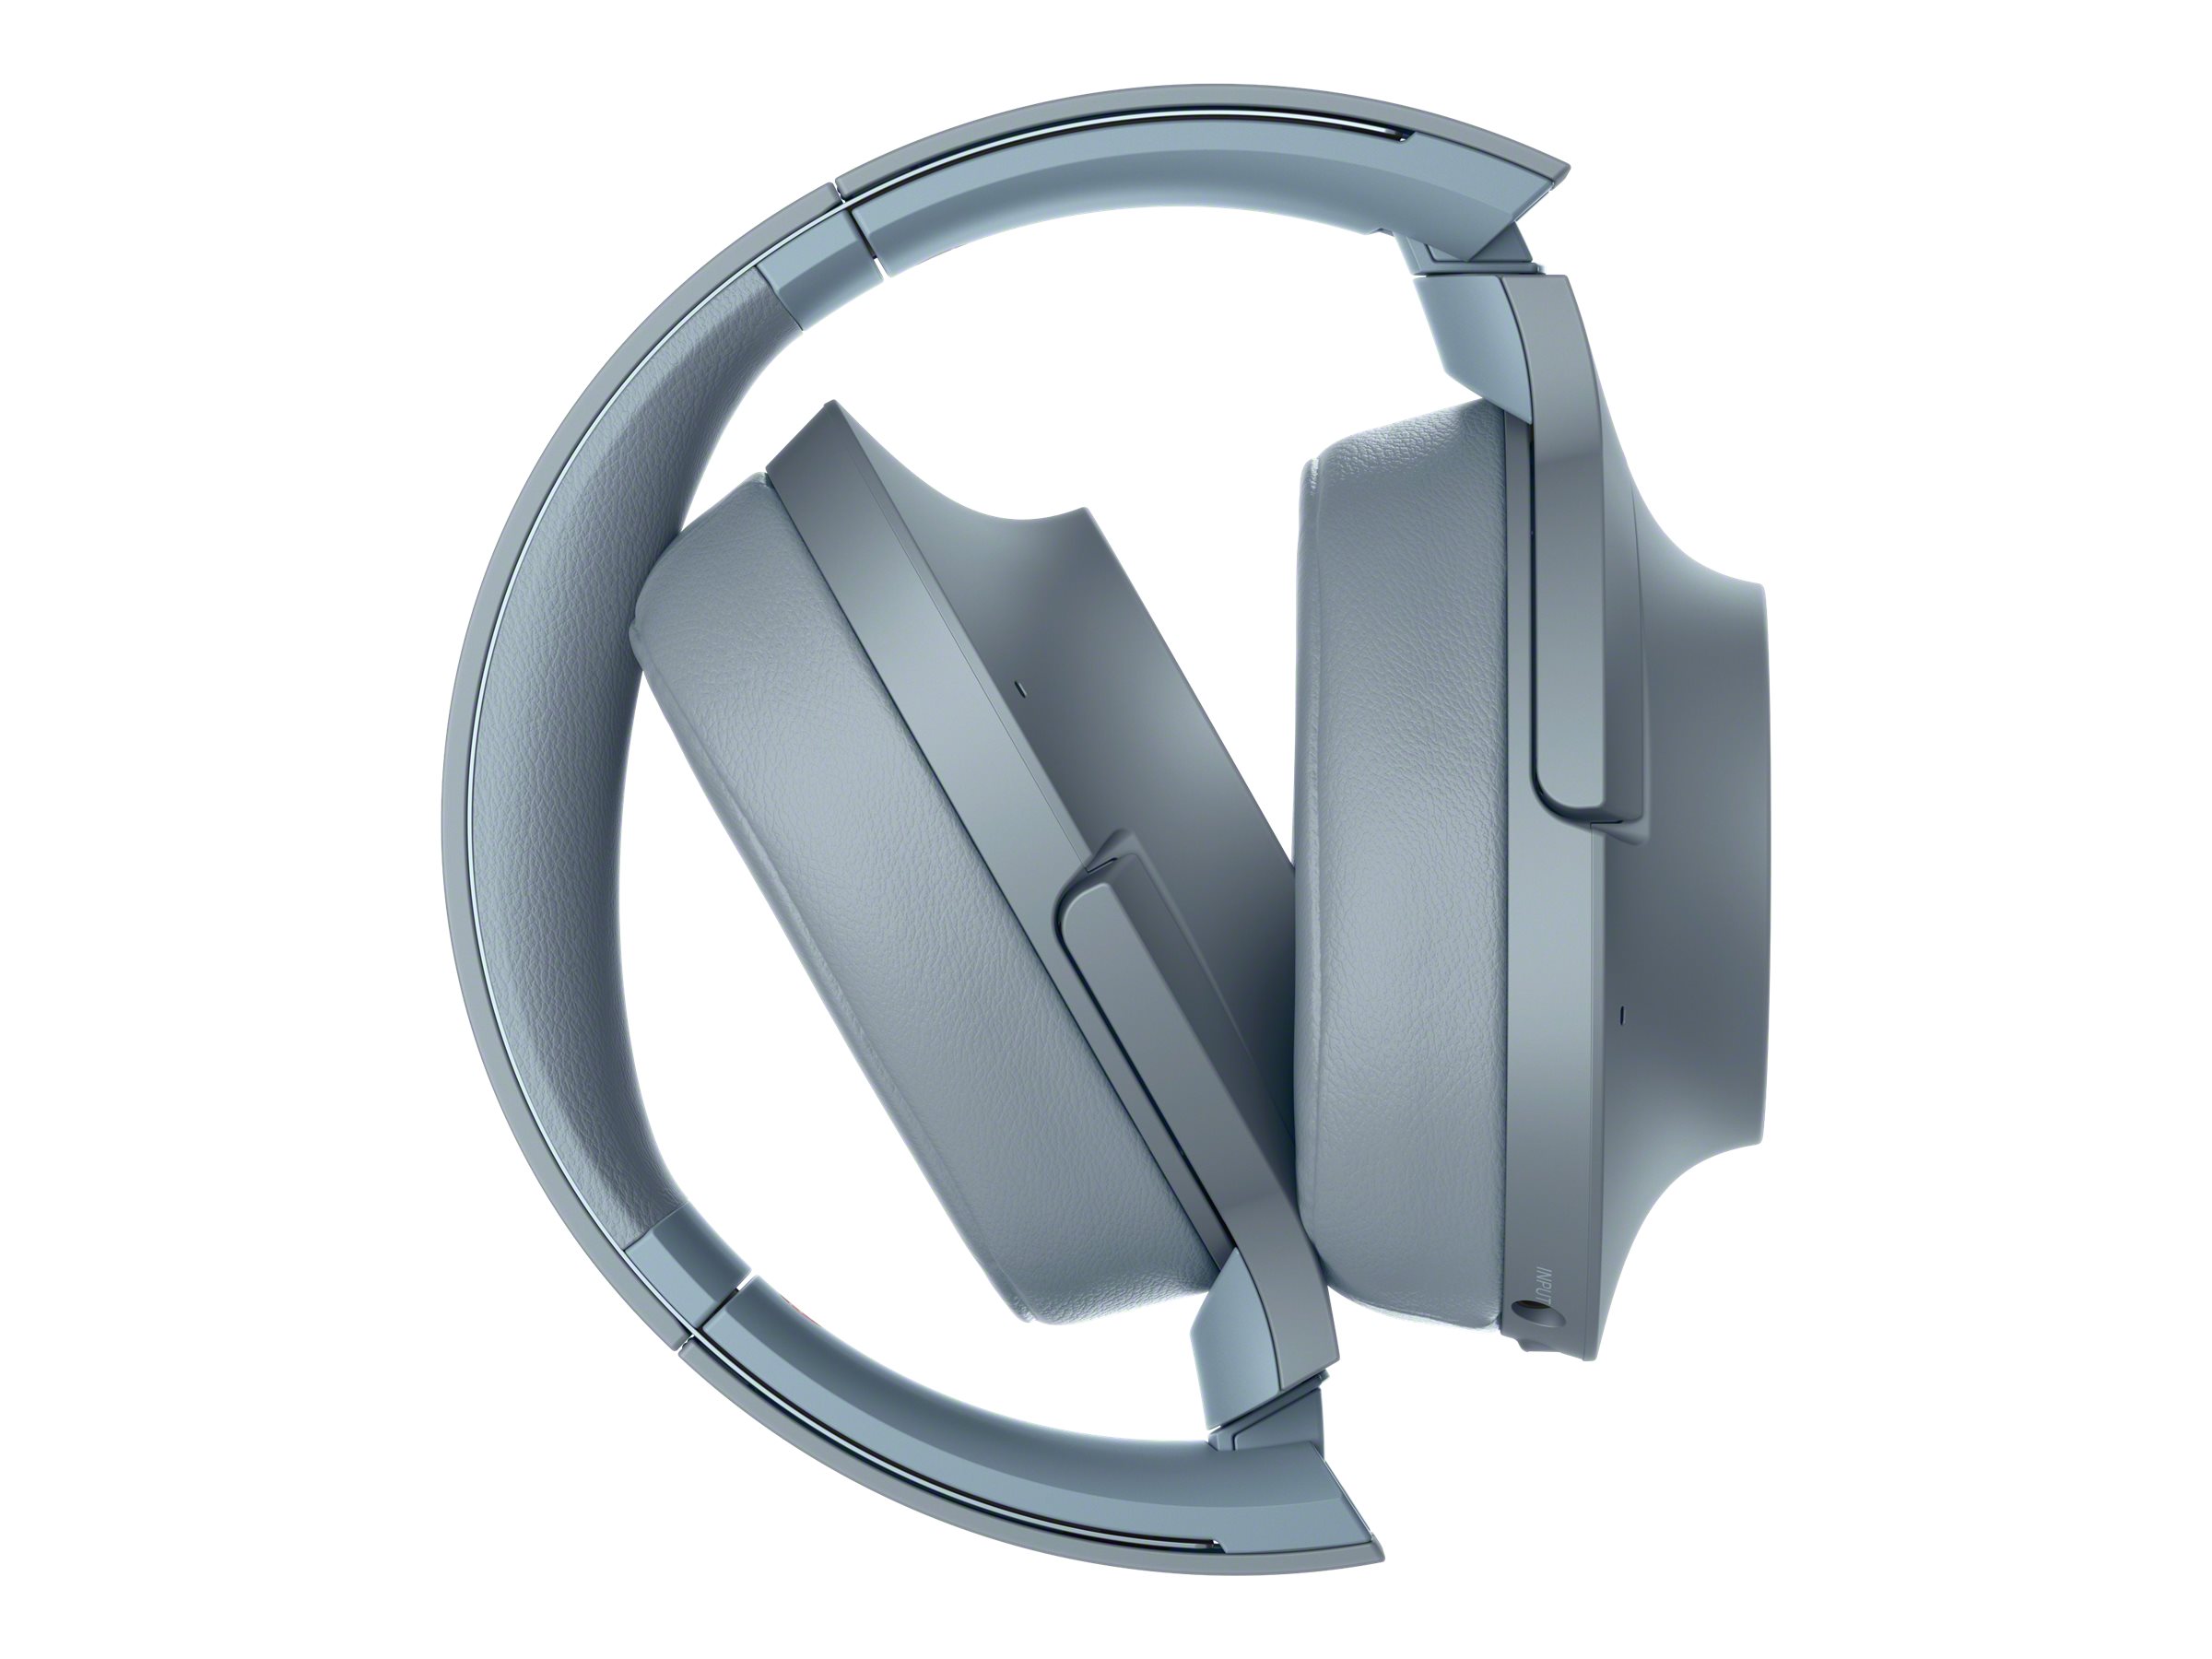 Auriculares Sony WH-1000XM4: análisis, características y opinión